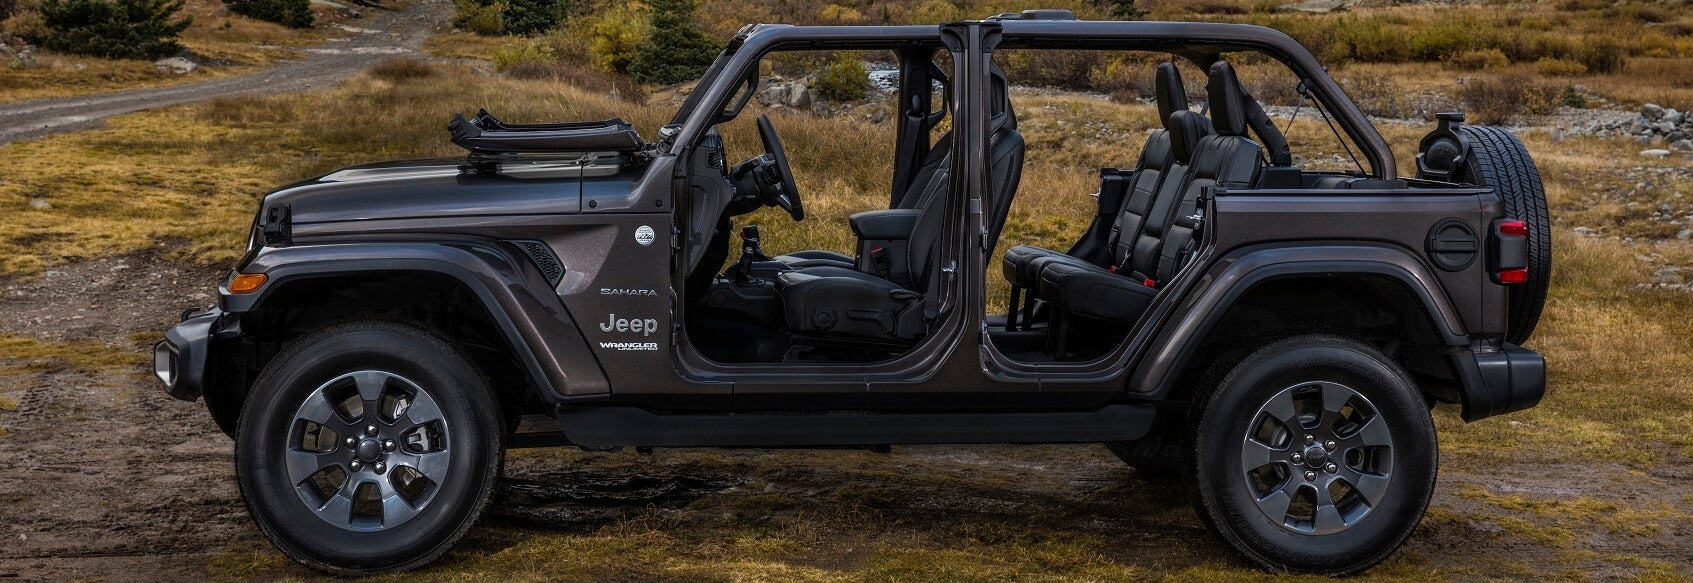 2021 Jeep Wrangler Interior Review